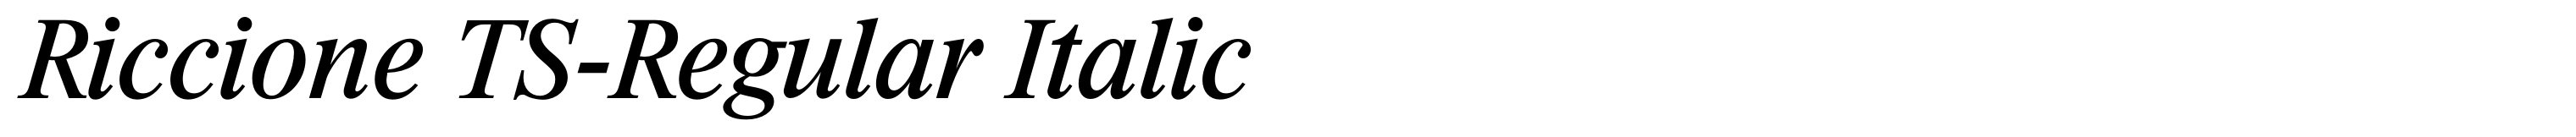 Riccione TS-Regular Italic